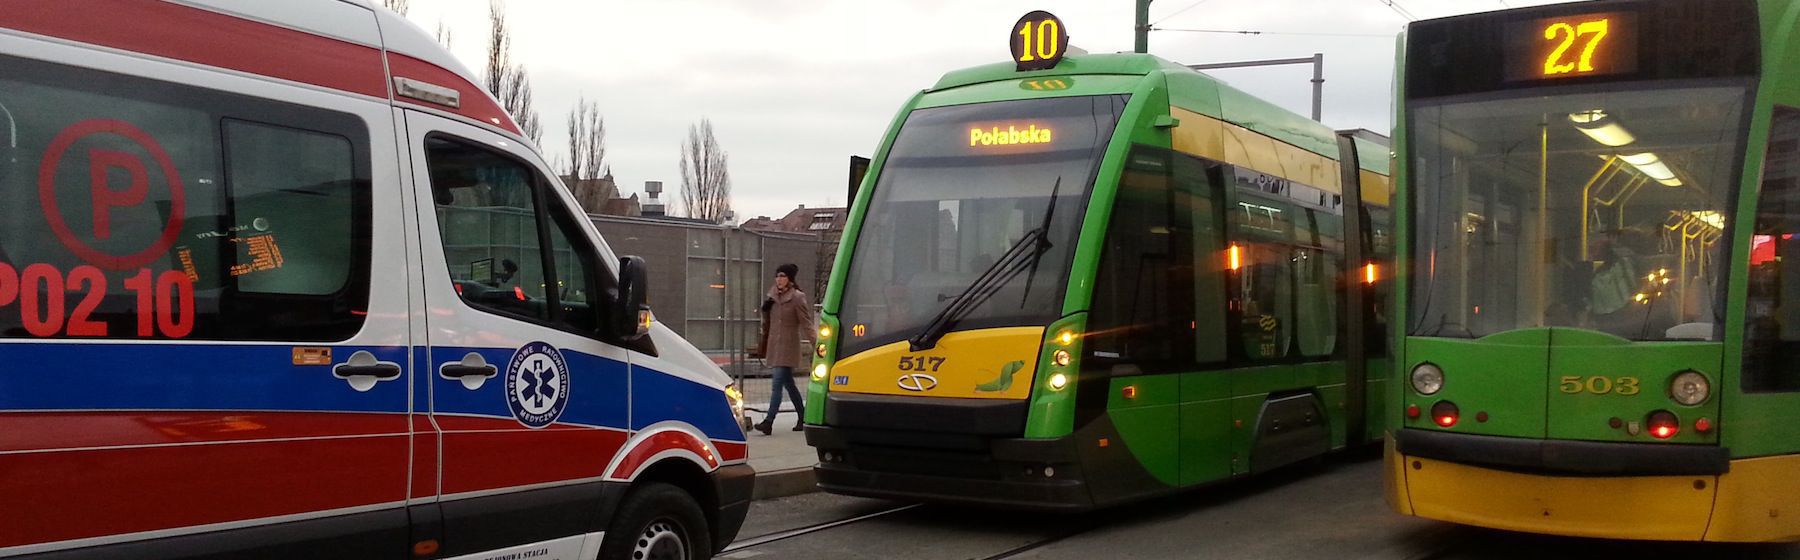 Zderzenie tramwaju i dwóch samochodów w Poznaniu. Ranne dziecko.